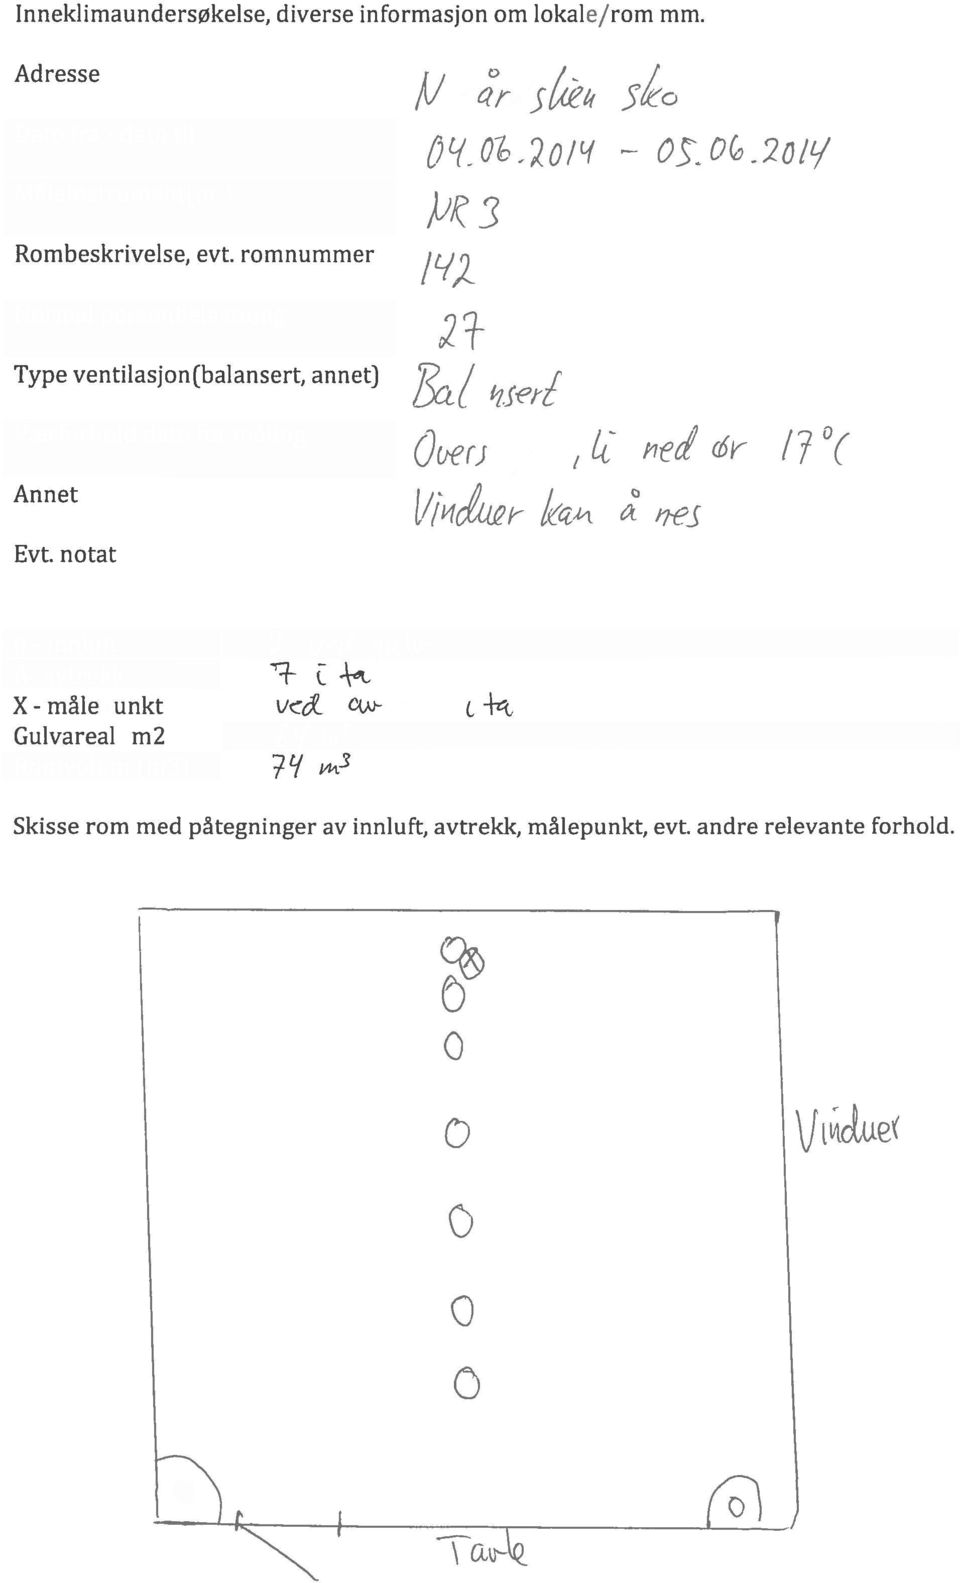 romnummer Normal personbelastning Type ventilasjon(balansert, annet) 2 - - 2ot Værforhold dato for måling Annet Crj